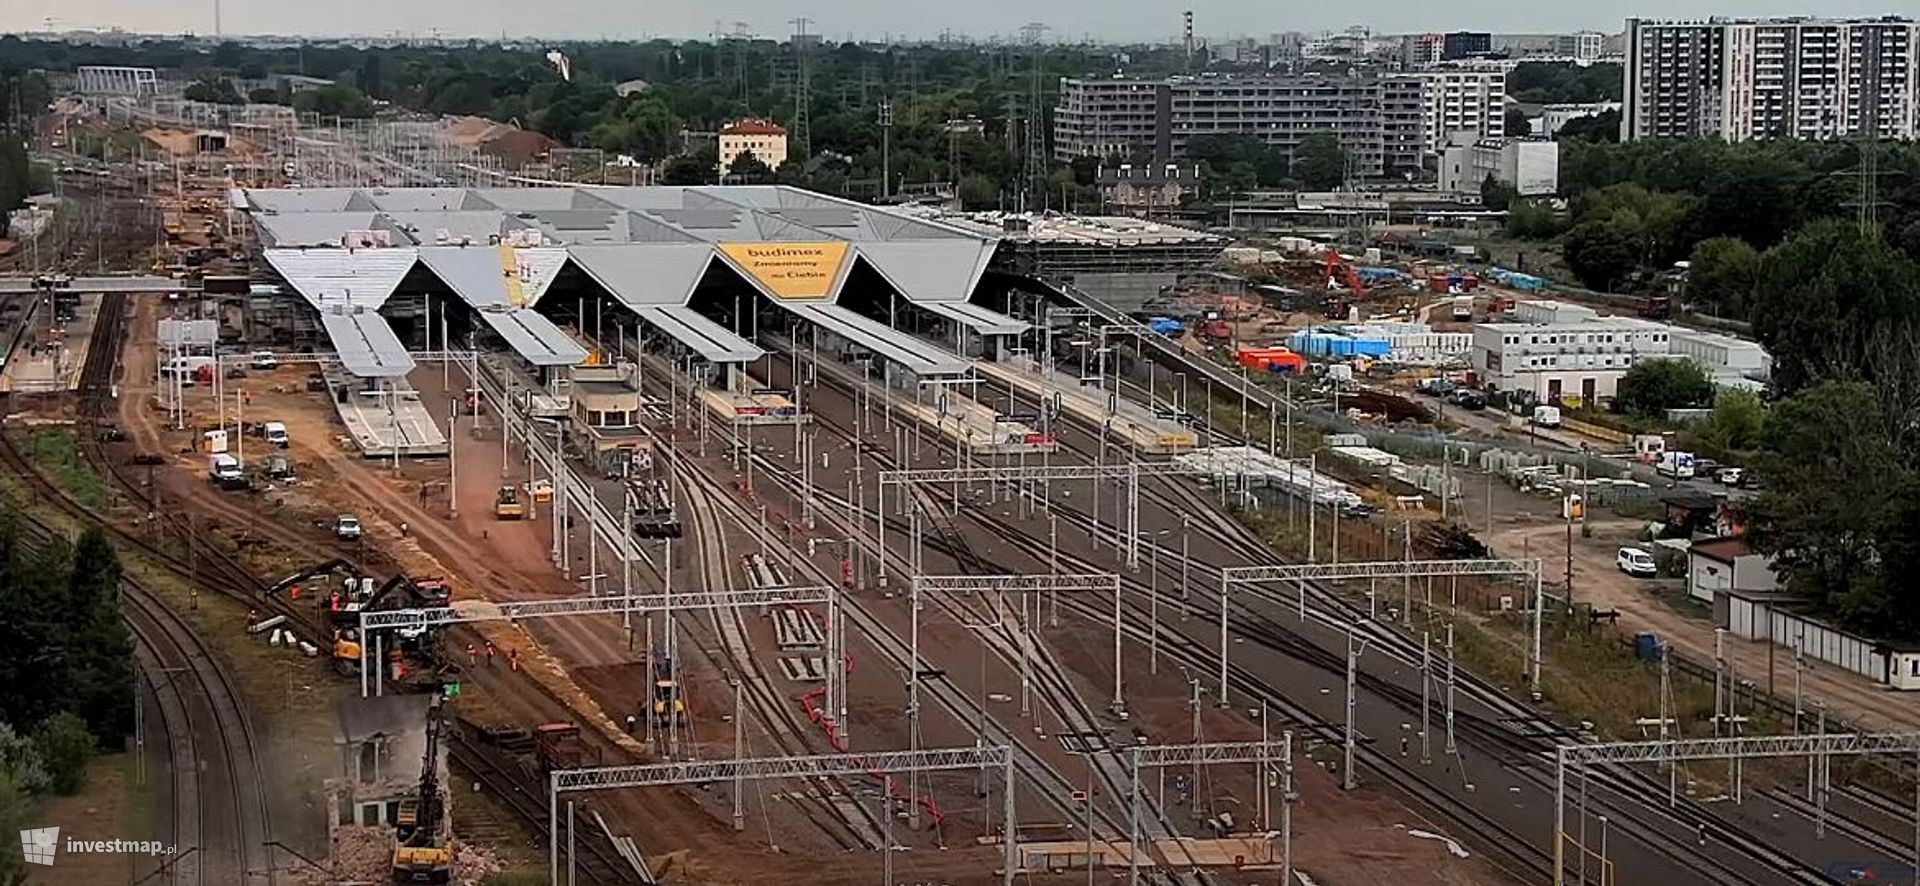 Trwa budowa największego węzła przesiadkowego w Polsce – nowego dworca Warszawa Zachodnia 